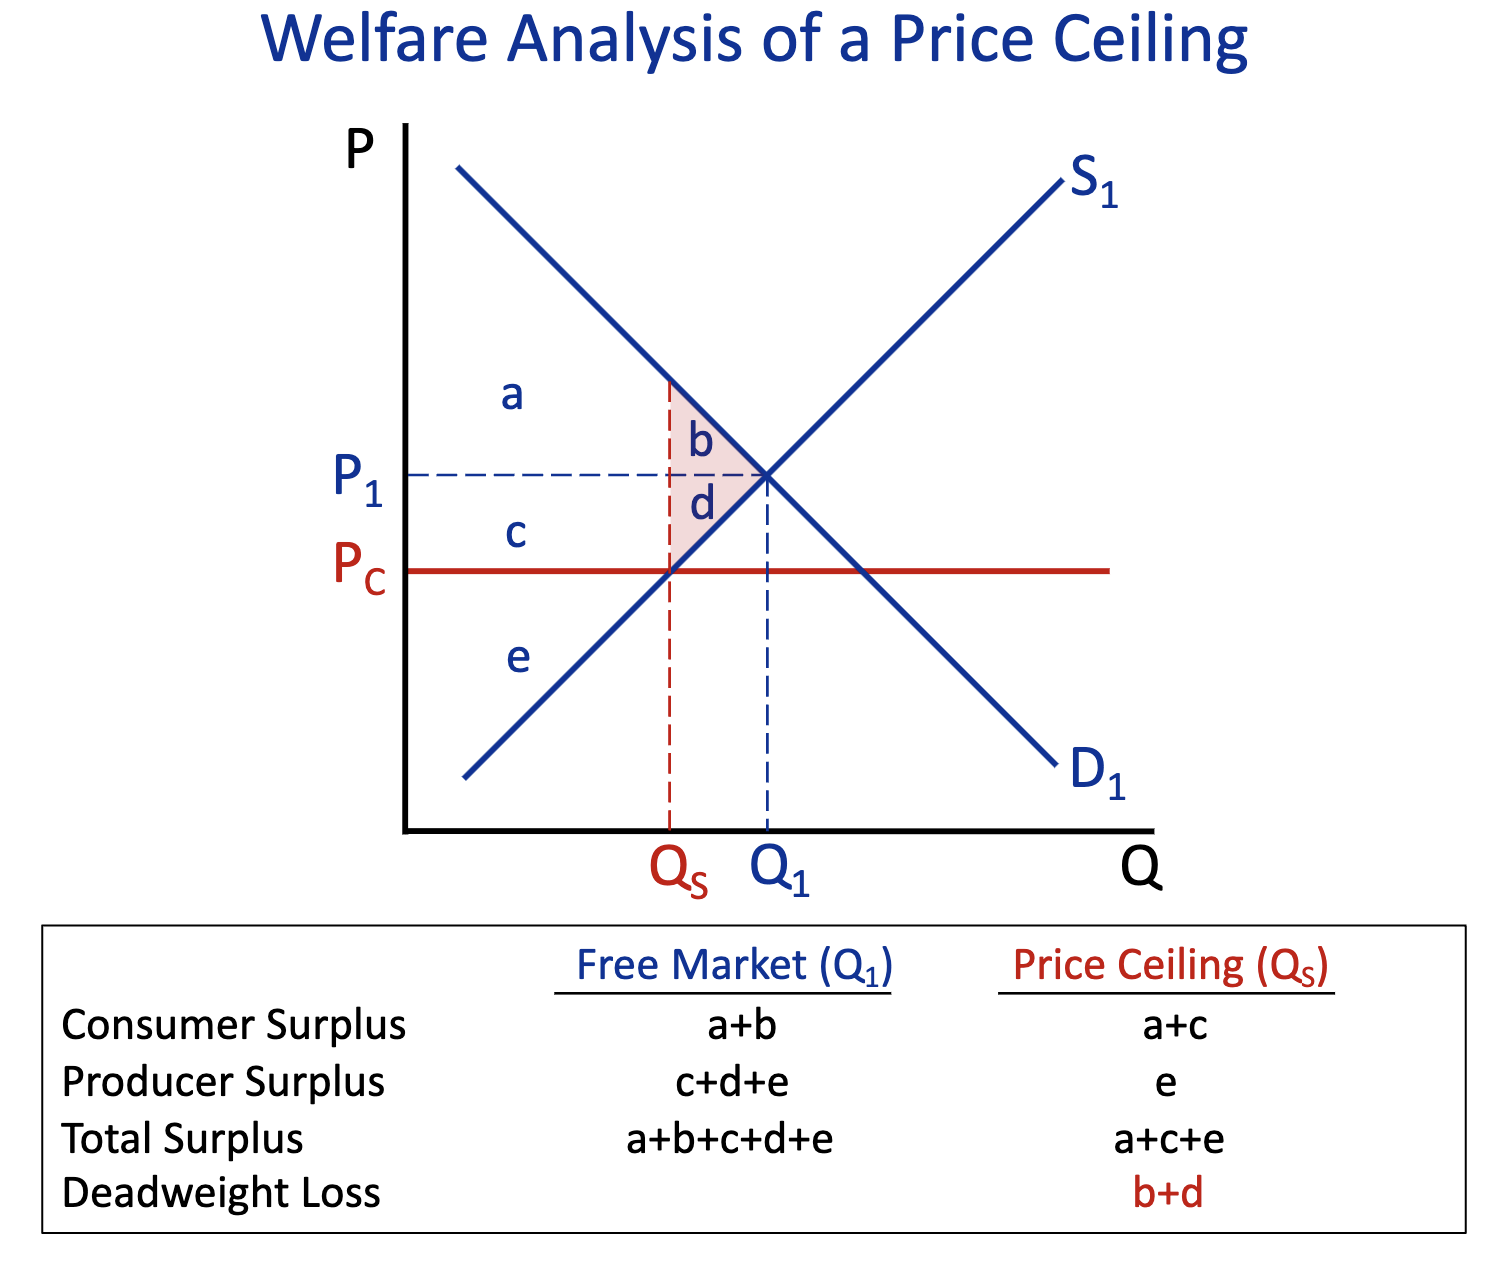 <p>Free Market (Q1) : c+d+e</p><p>Price Ceiling (Q2) : e</p>